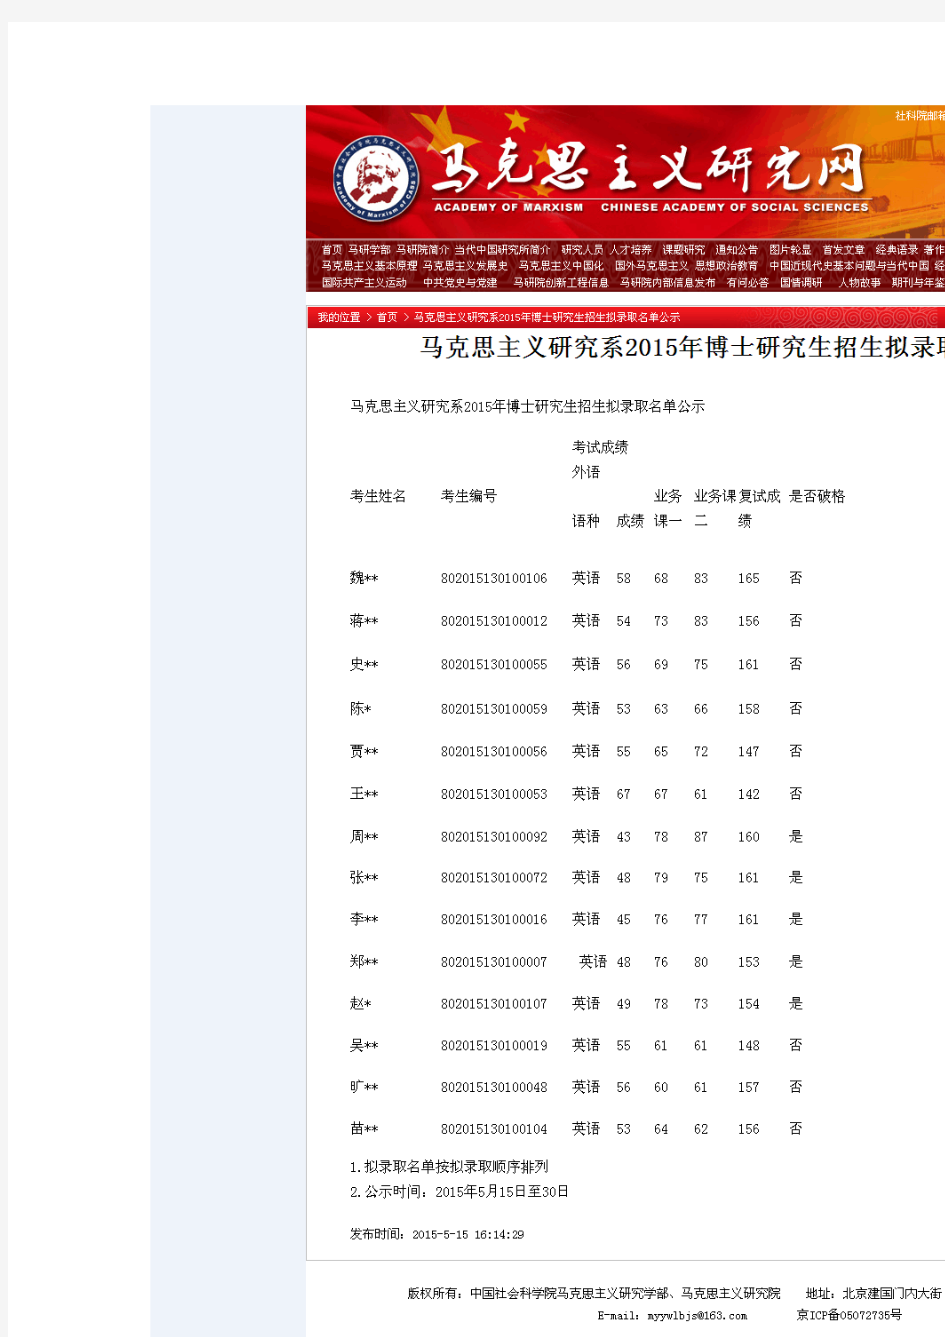 15年中国社科院博士录取名单